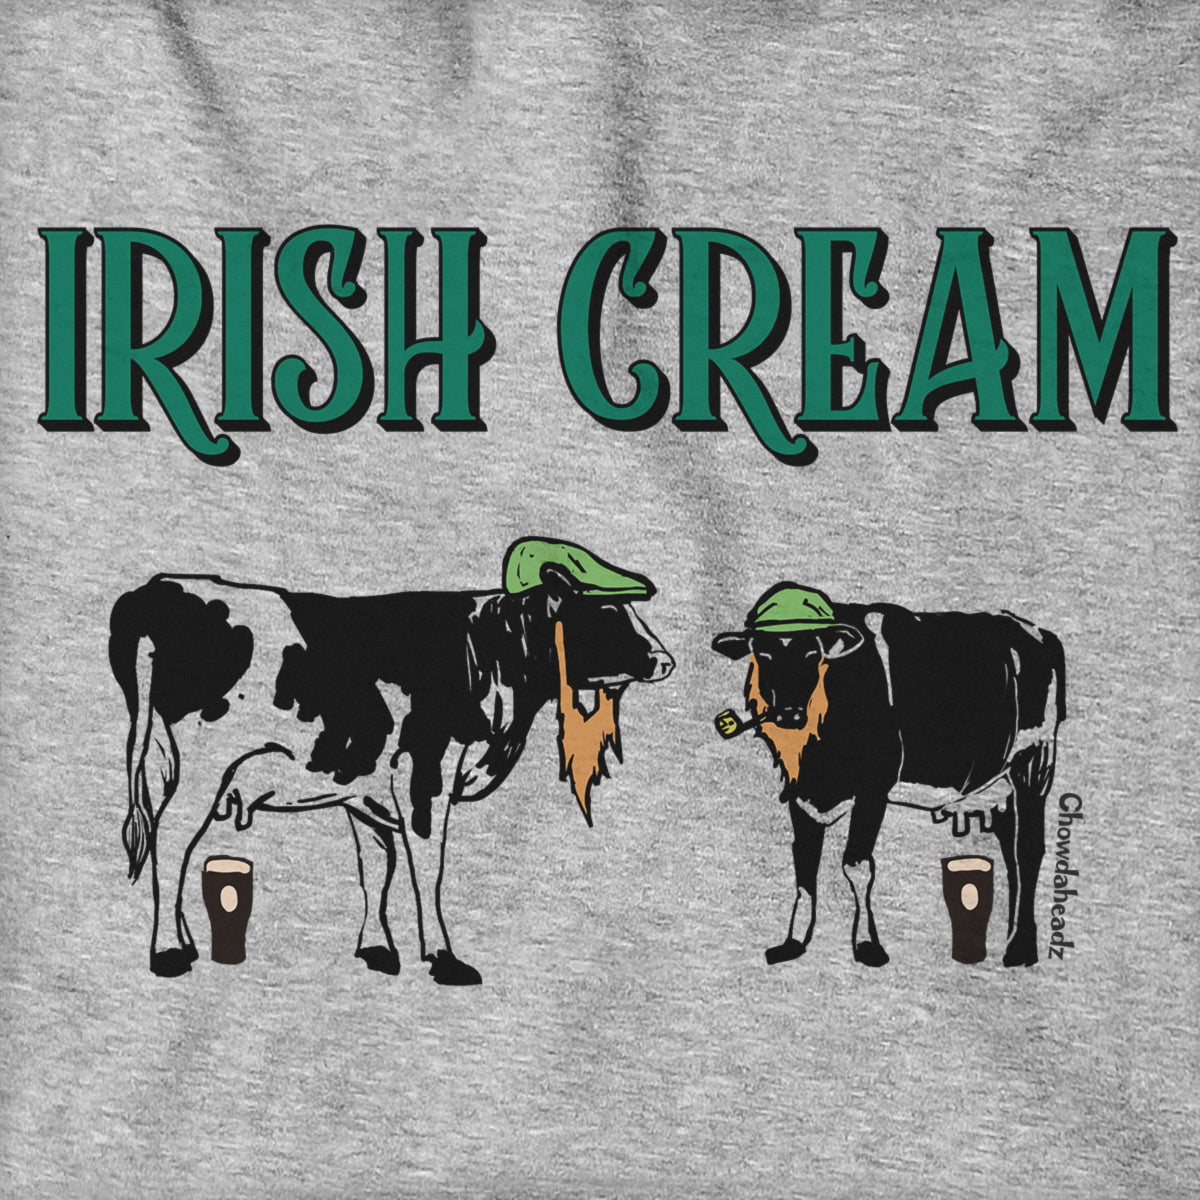 Irish Cream Hoodie - Chowdaheadz